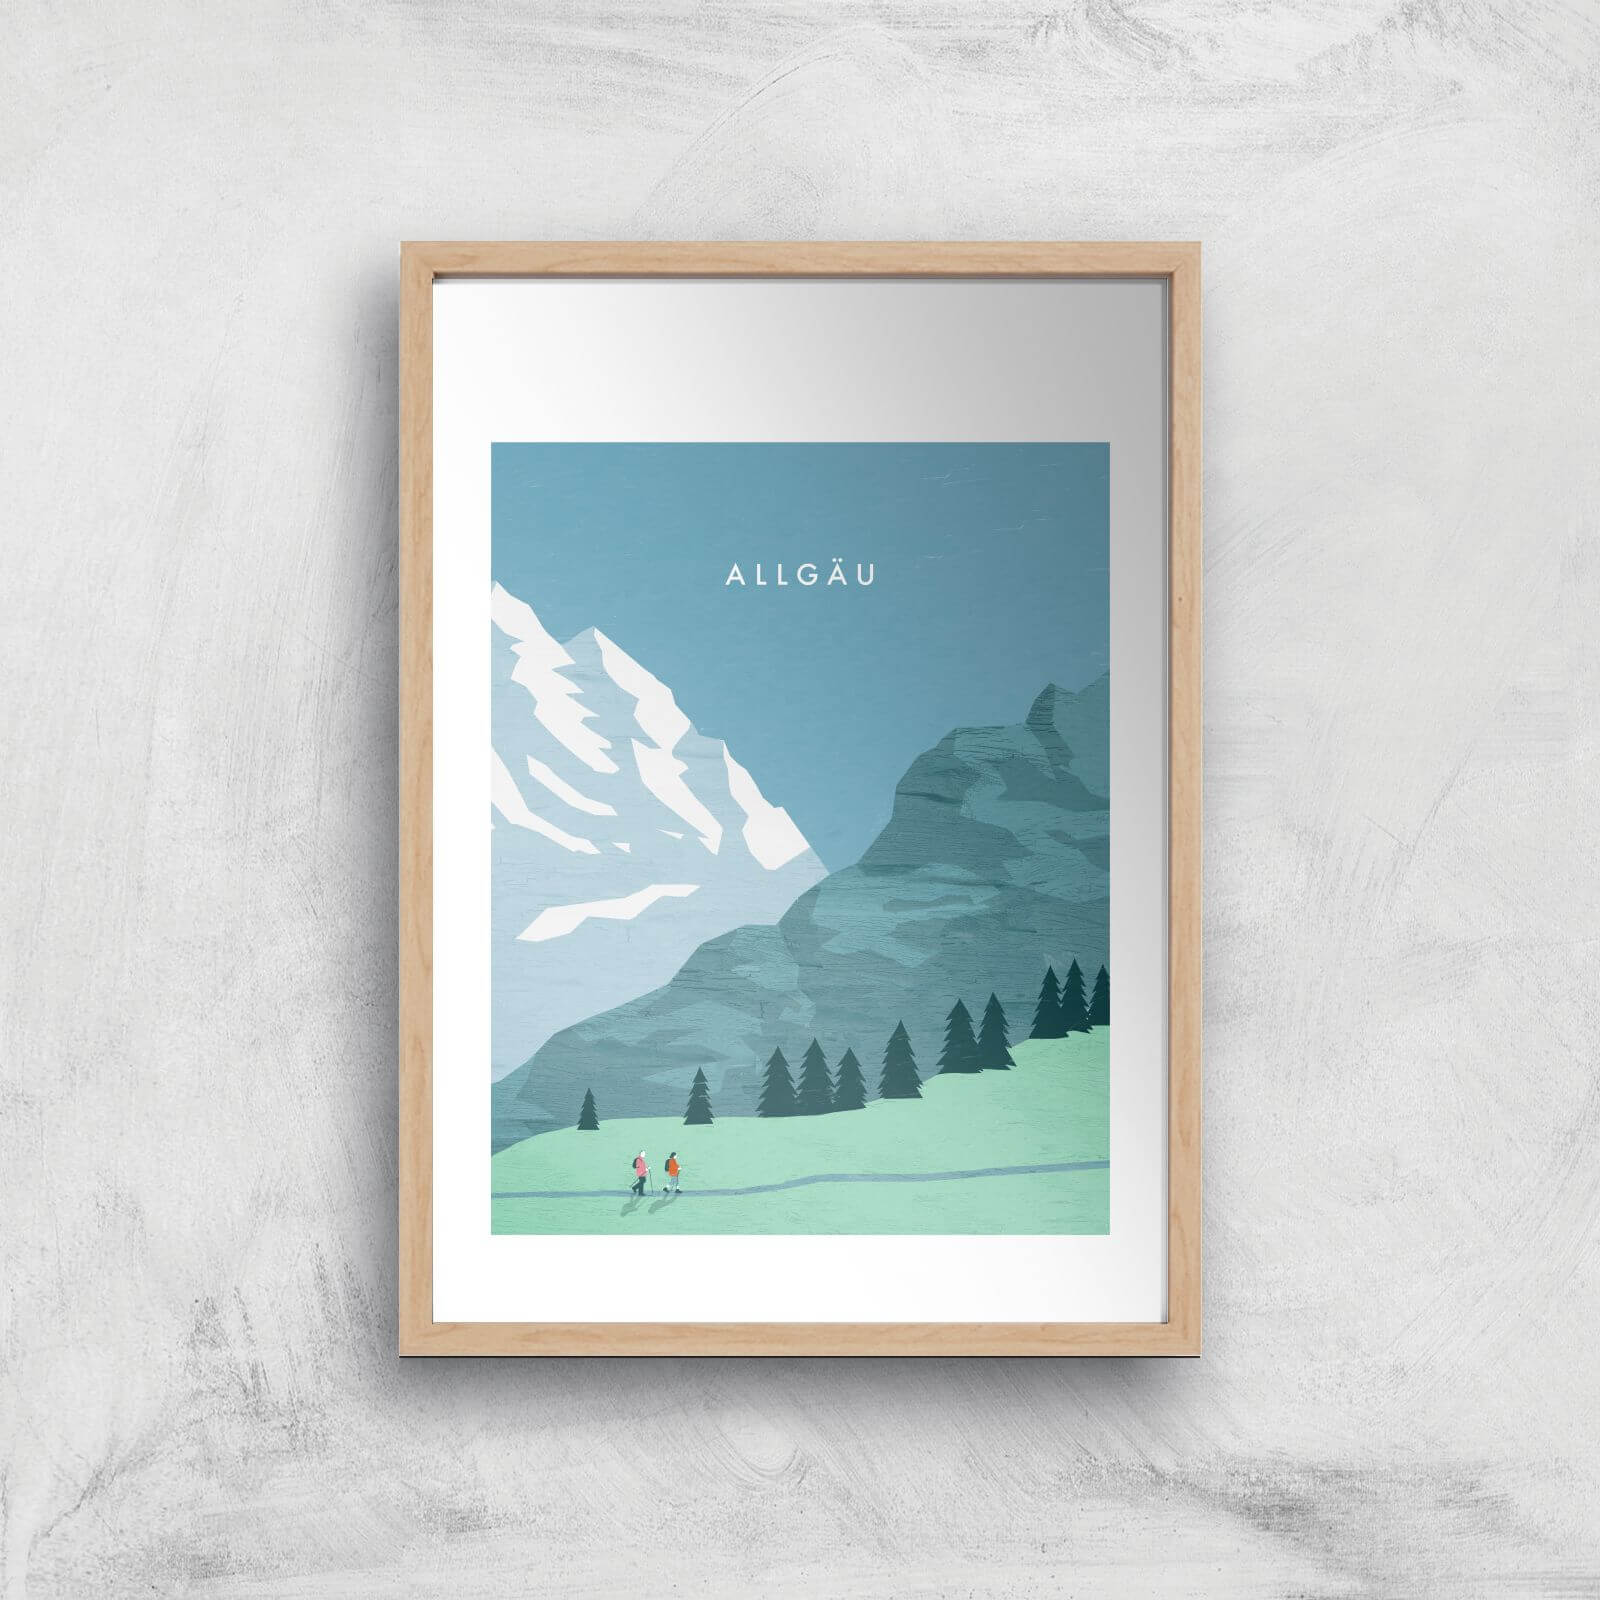 Algau Art Print - A3 - Wood Frame